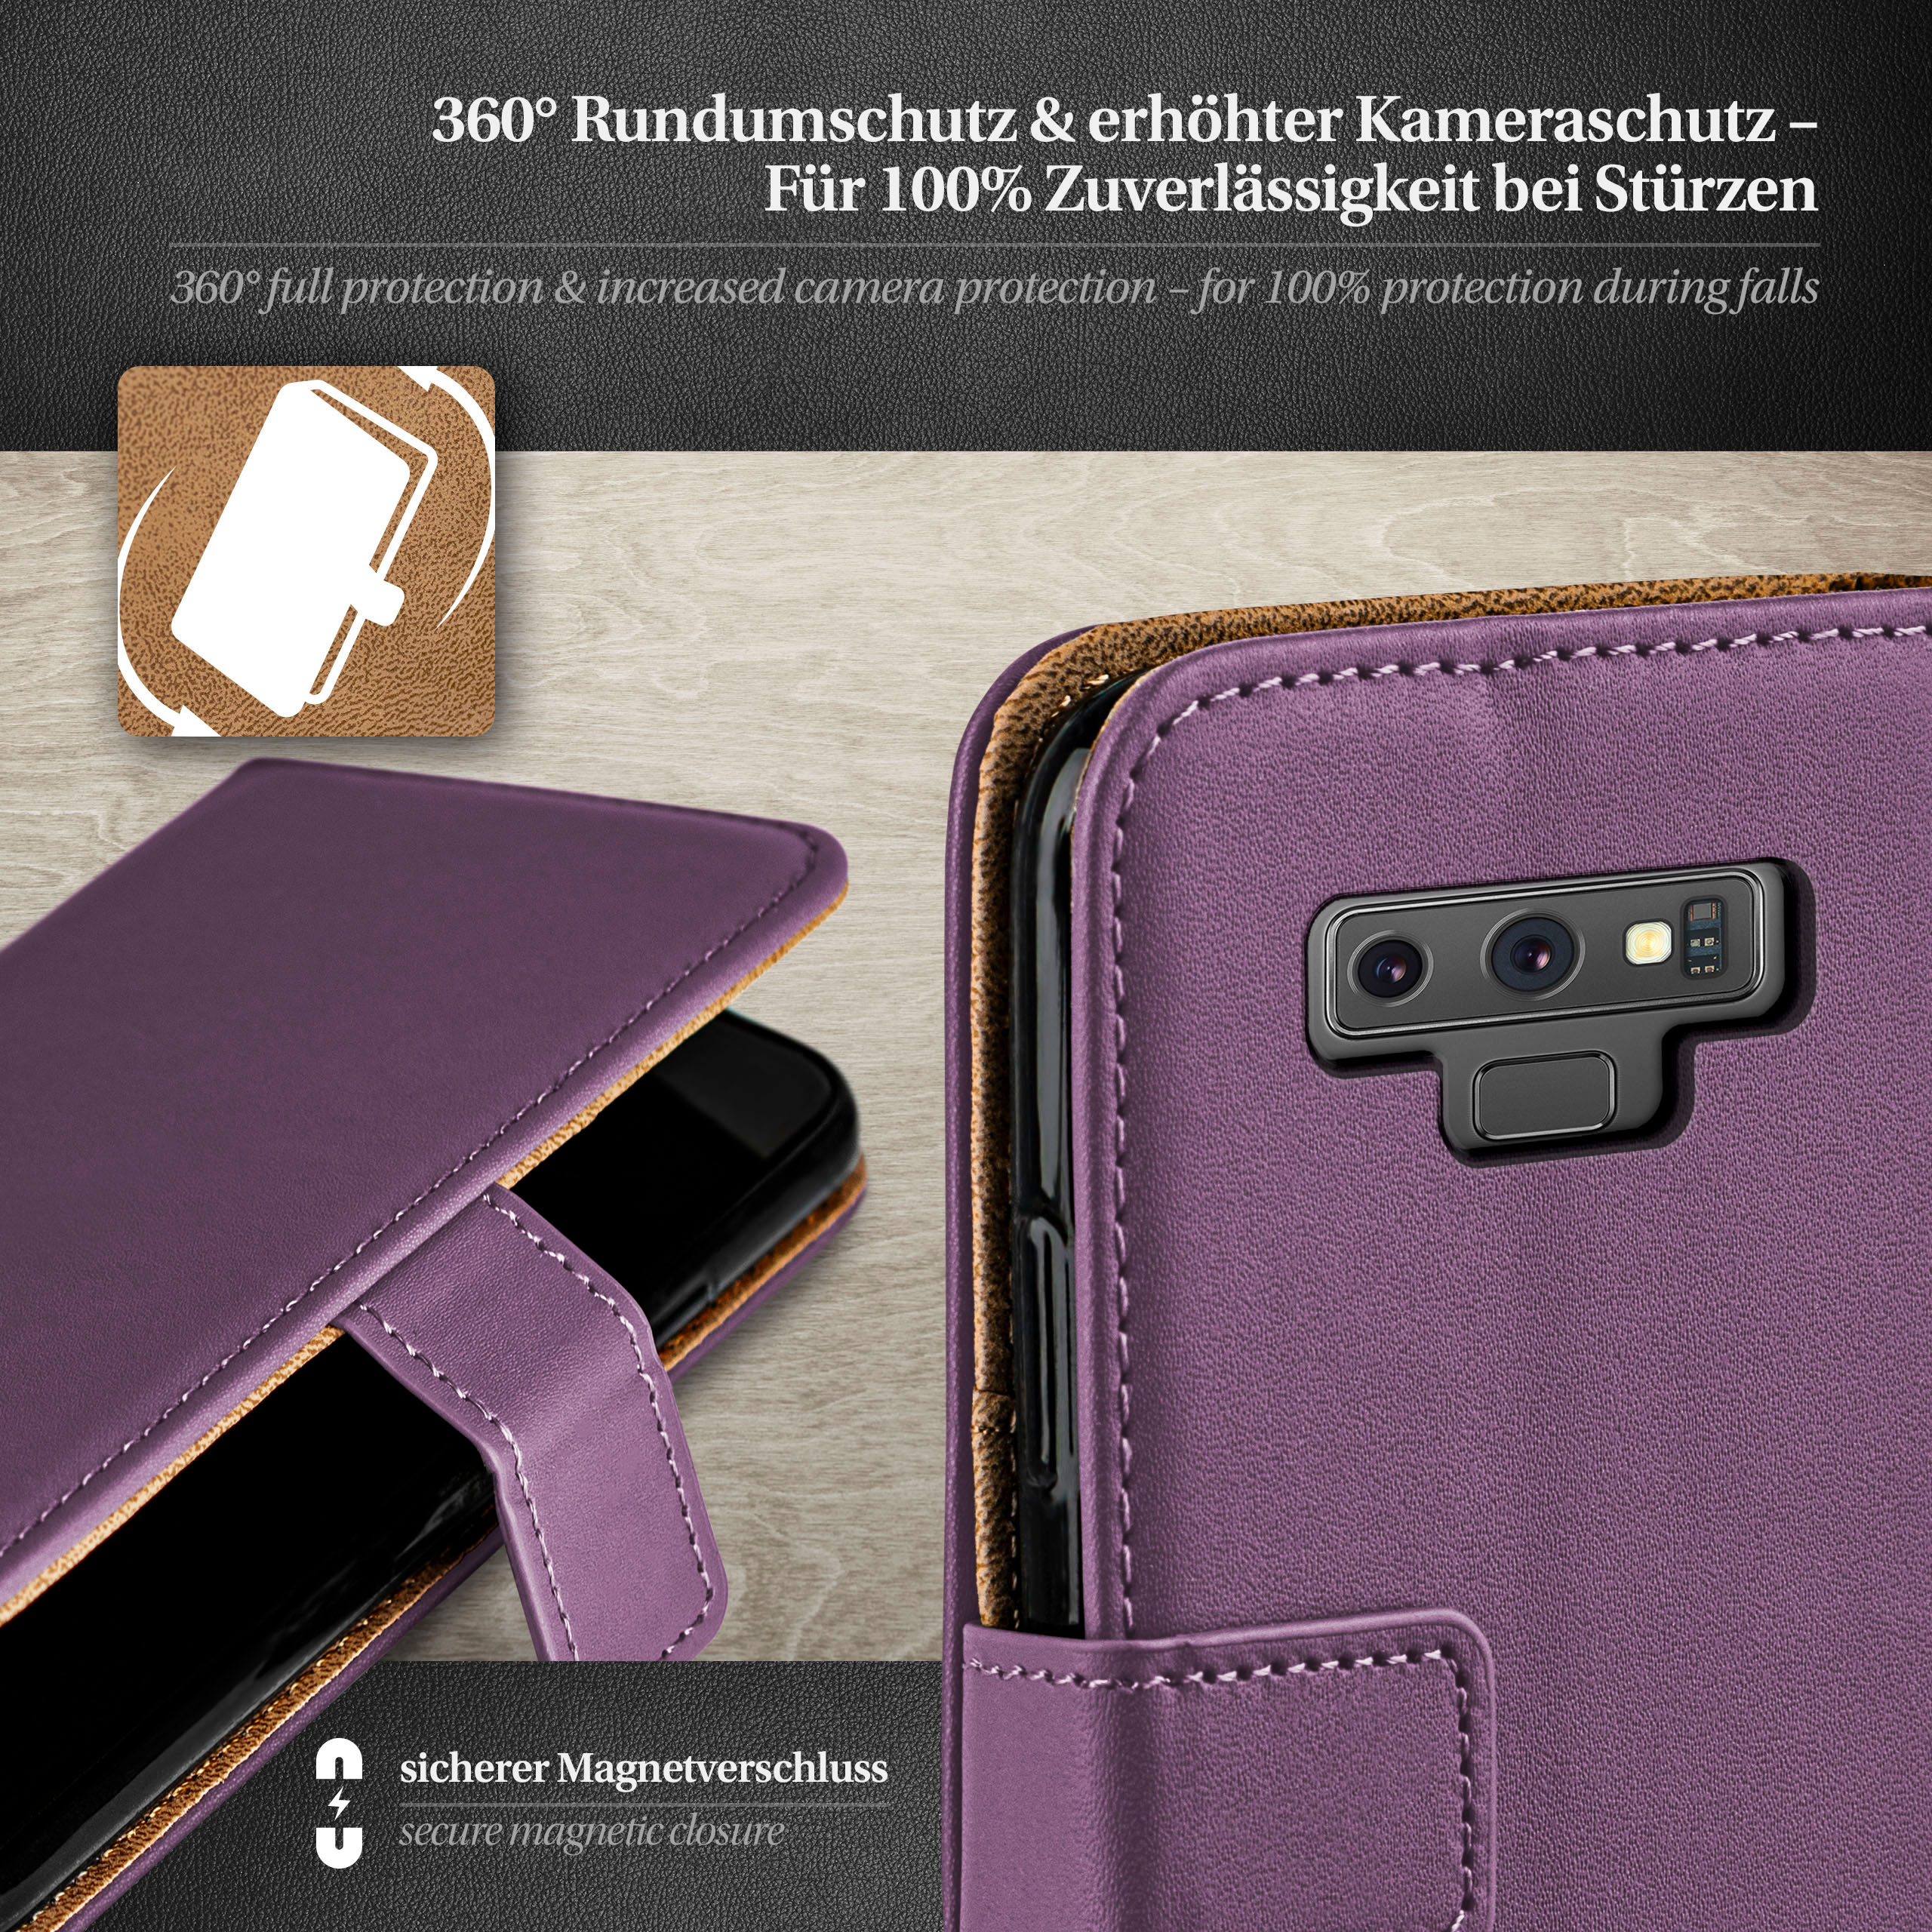 MOEX Book Case, Bookcover, Samsung, 9, Note Galaxy Indigo-Violet